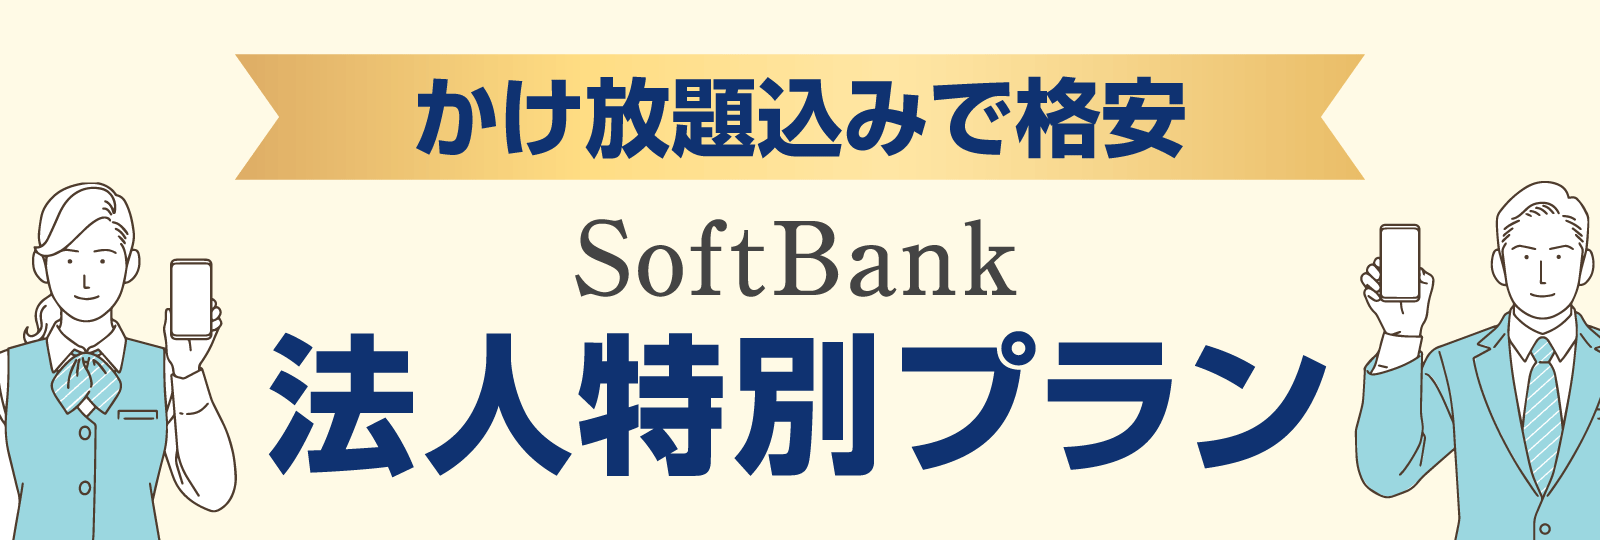 かけ放題込みで格安。SoftBank法人特別プラン